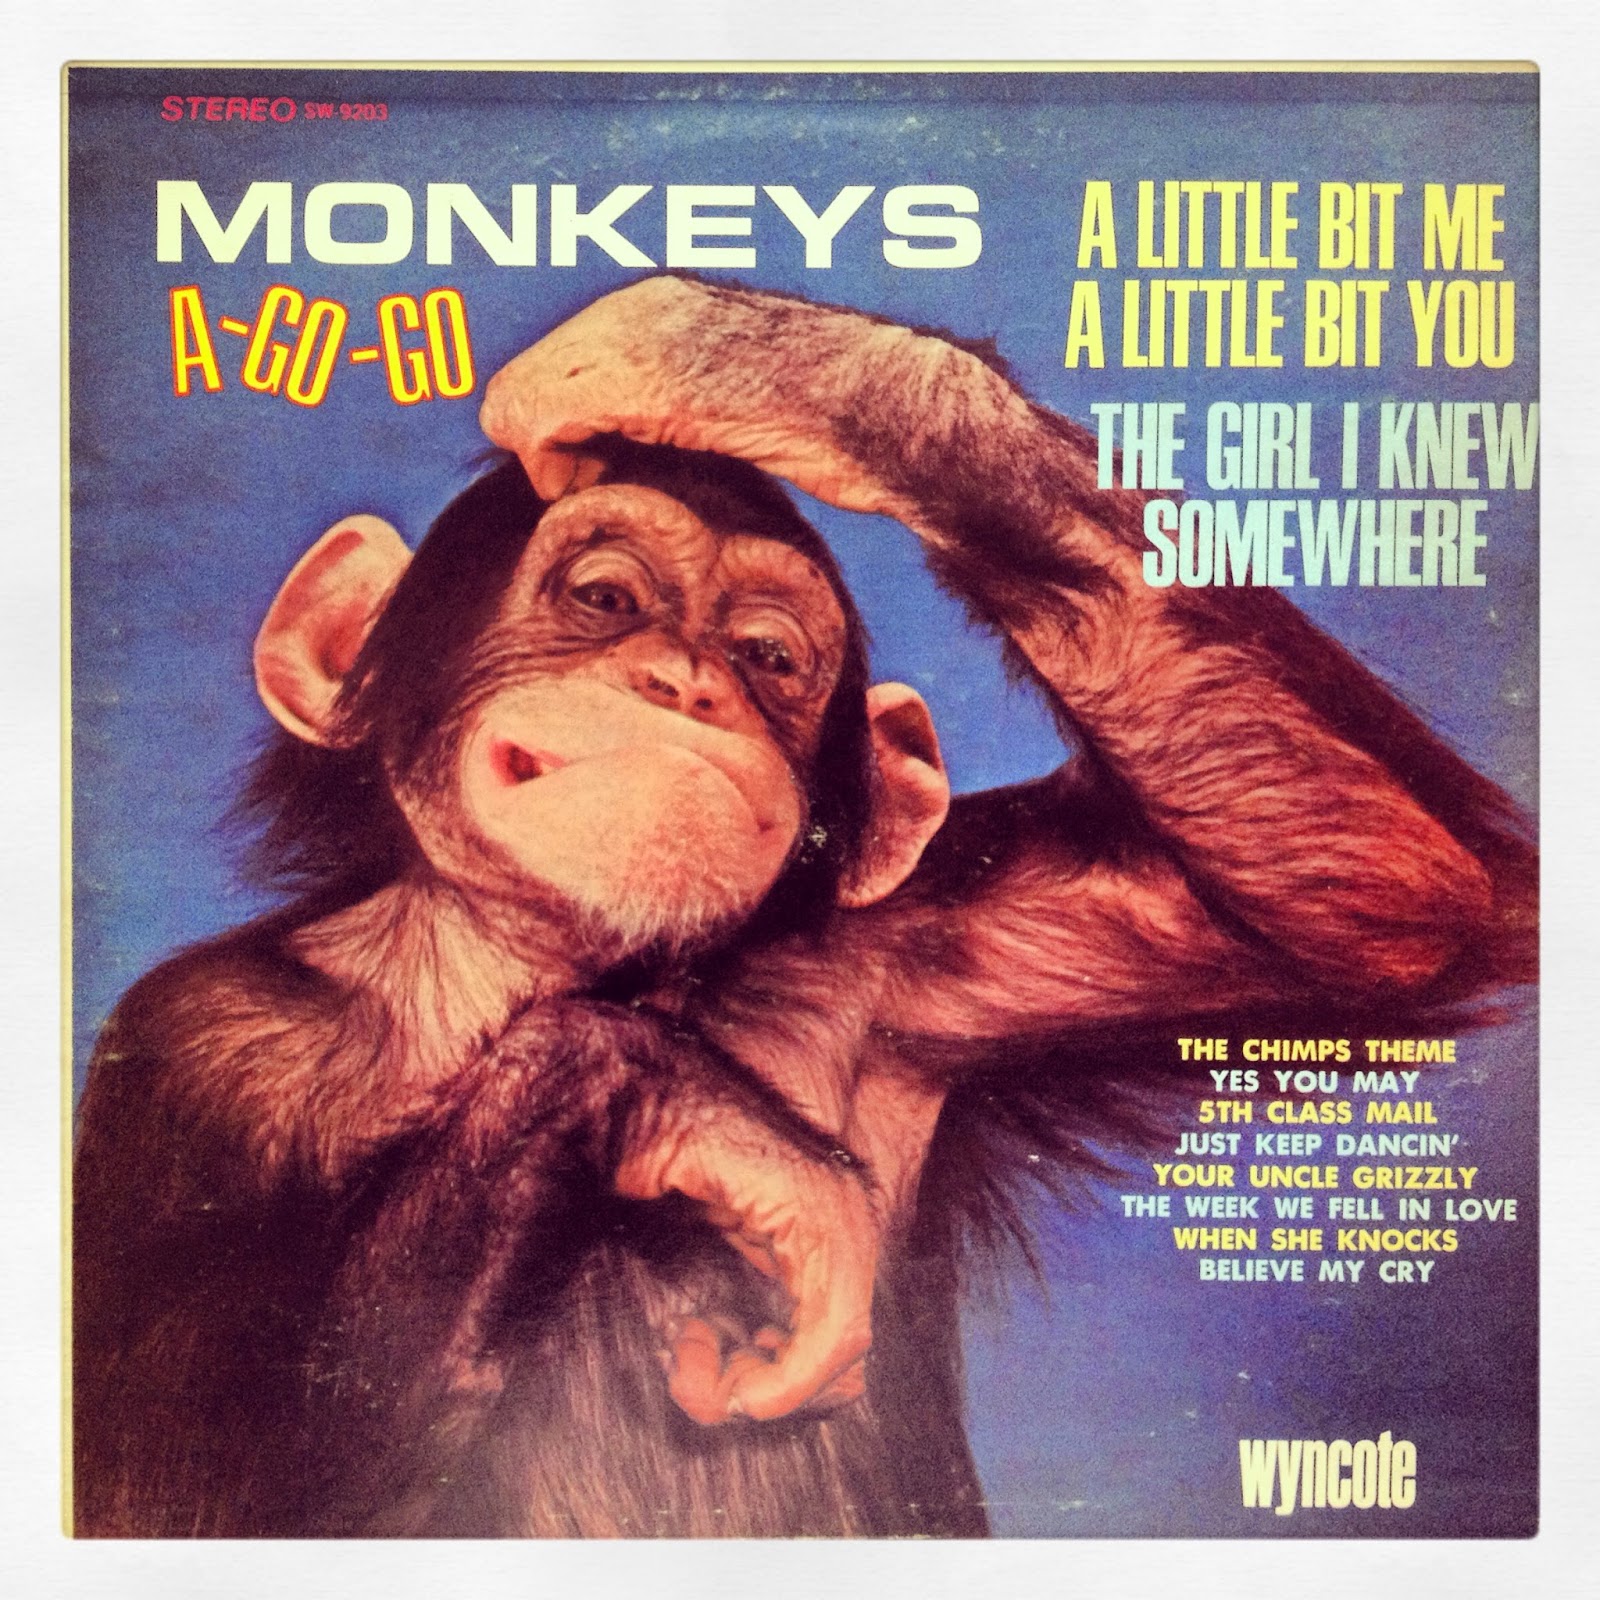 Monkey песня слушать. Обезьяна музыка. Трек с обезьяной. Альбом с обезьянками. Monkey Business обложка альбома.